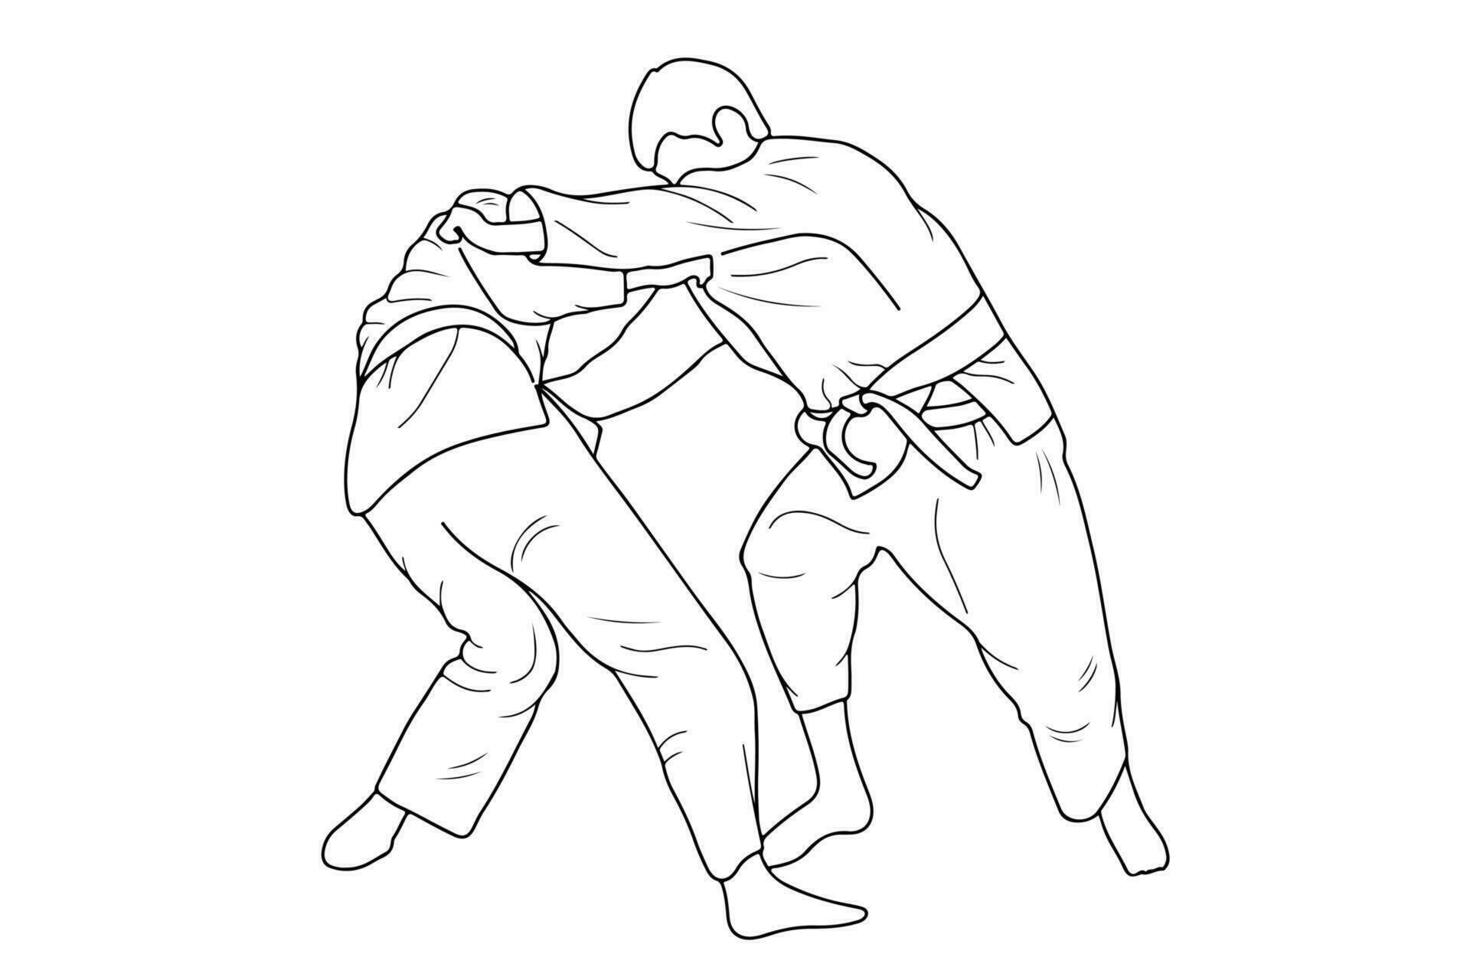 línea dibujo de dos joven juguetón judoka combatiente. judoista, judoca, atleta, duelo, luchar, judo vector